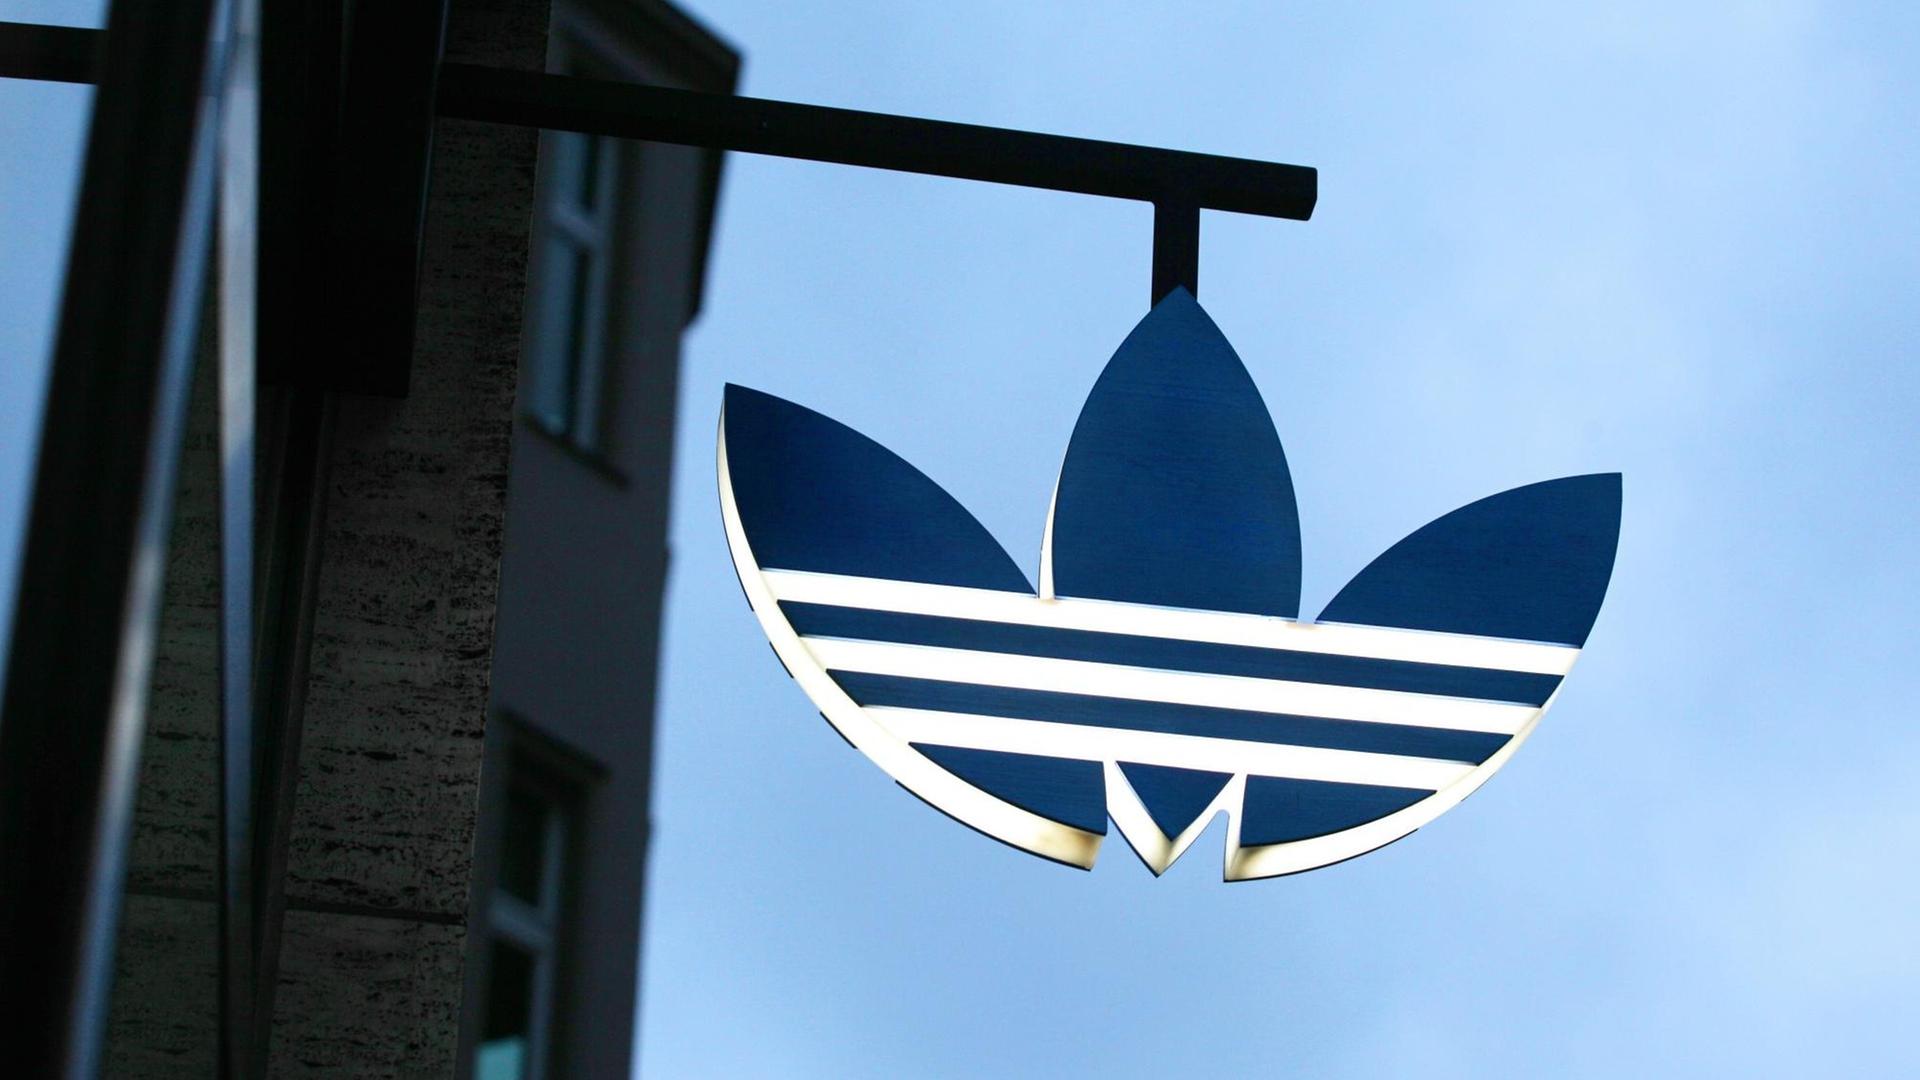 Das Adidas-Logo ist ein drei-geteiltes Blatt in schwarz-weiß.